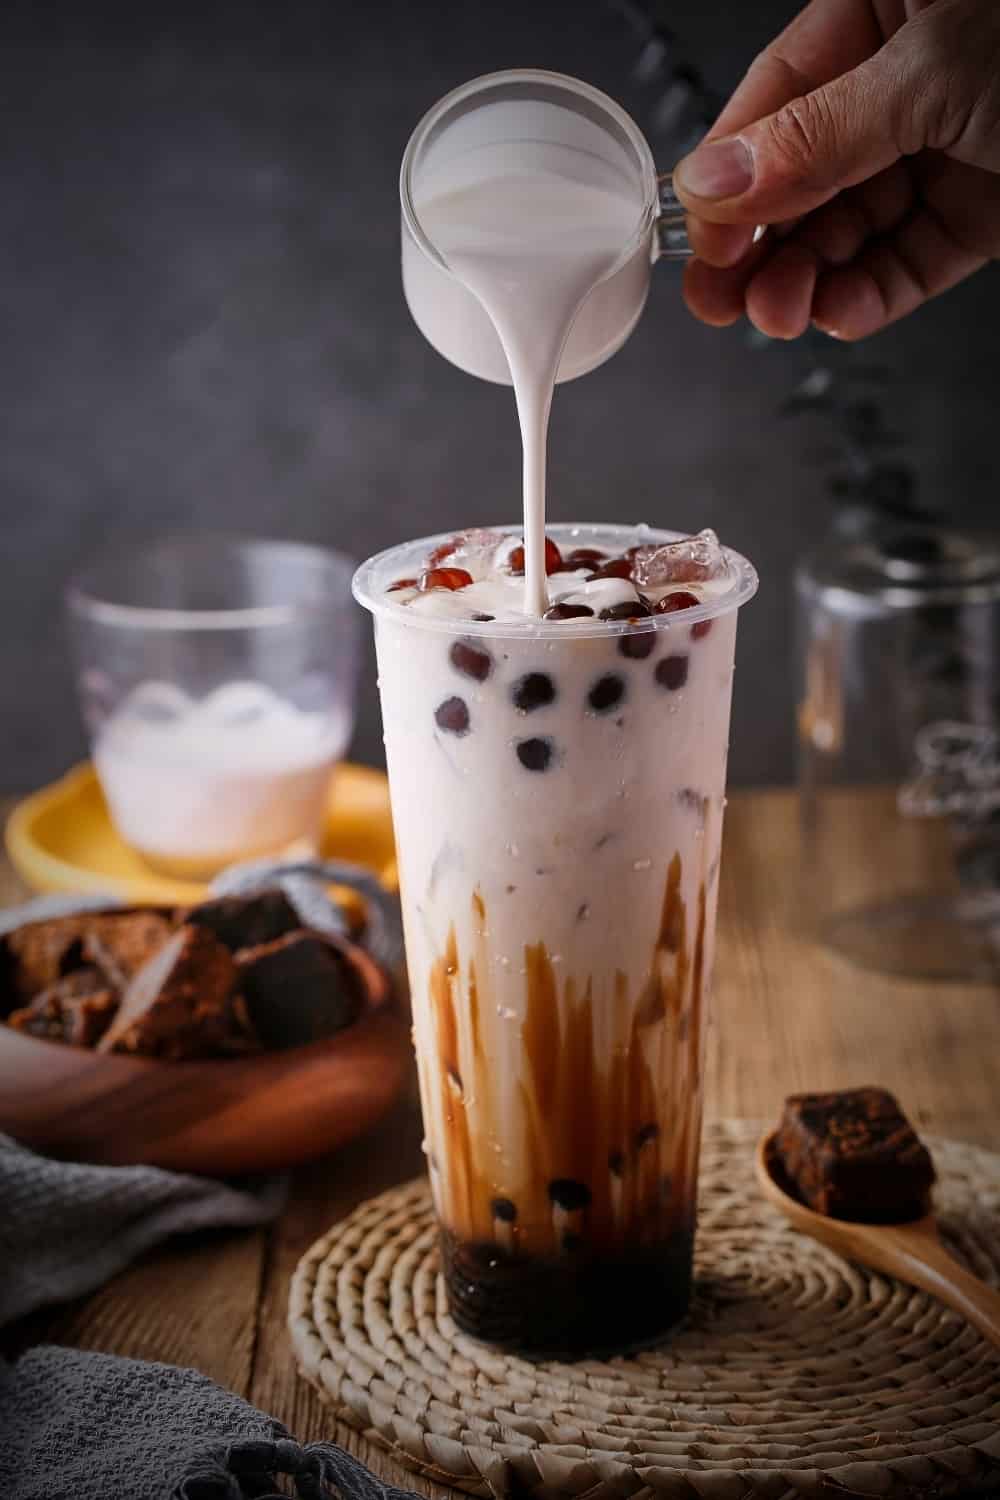 Fotografía publicitaria de té negro con leche y burbujas